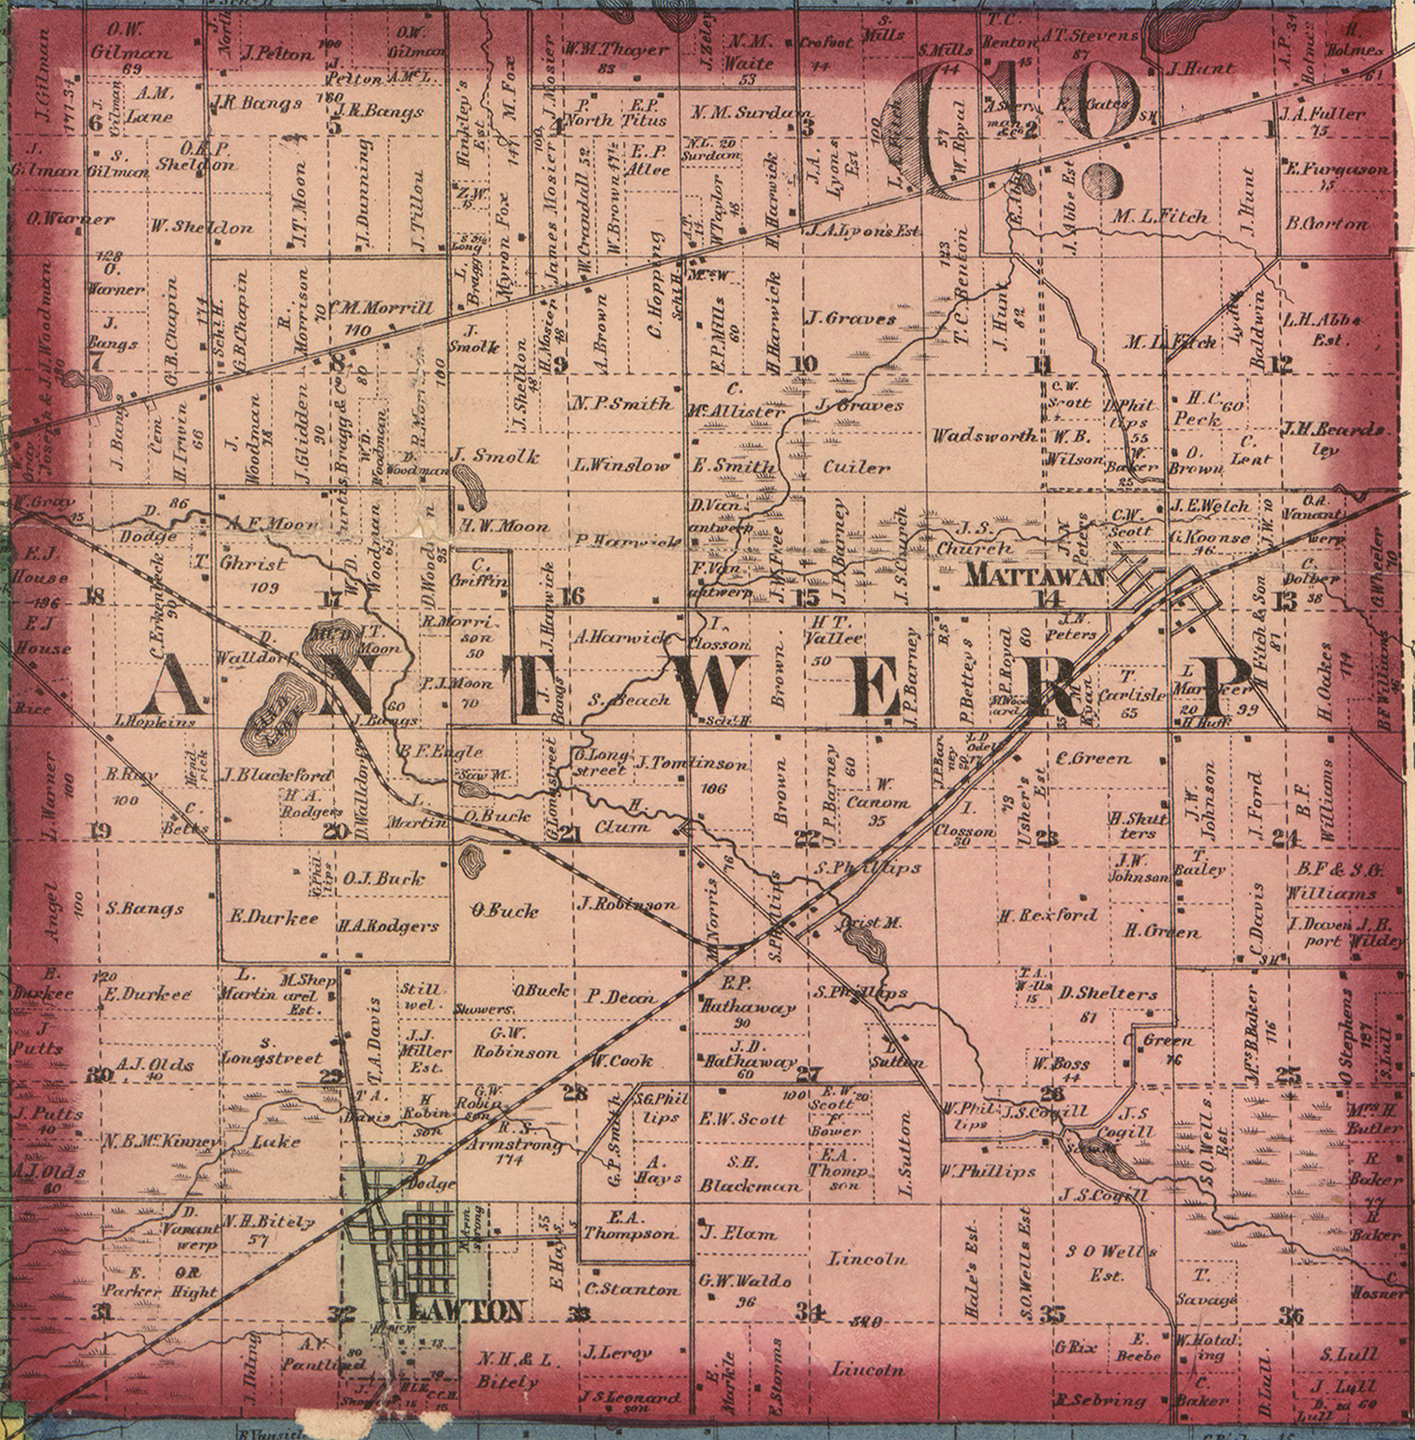 1860 Antwerp Township, Michigan landownership map